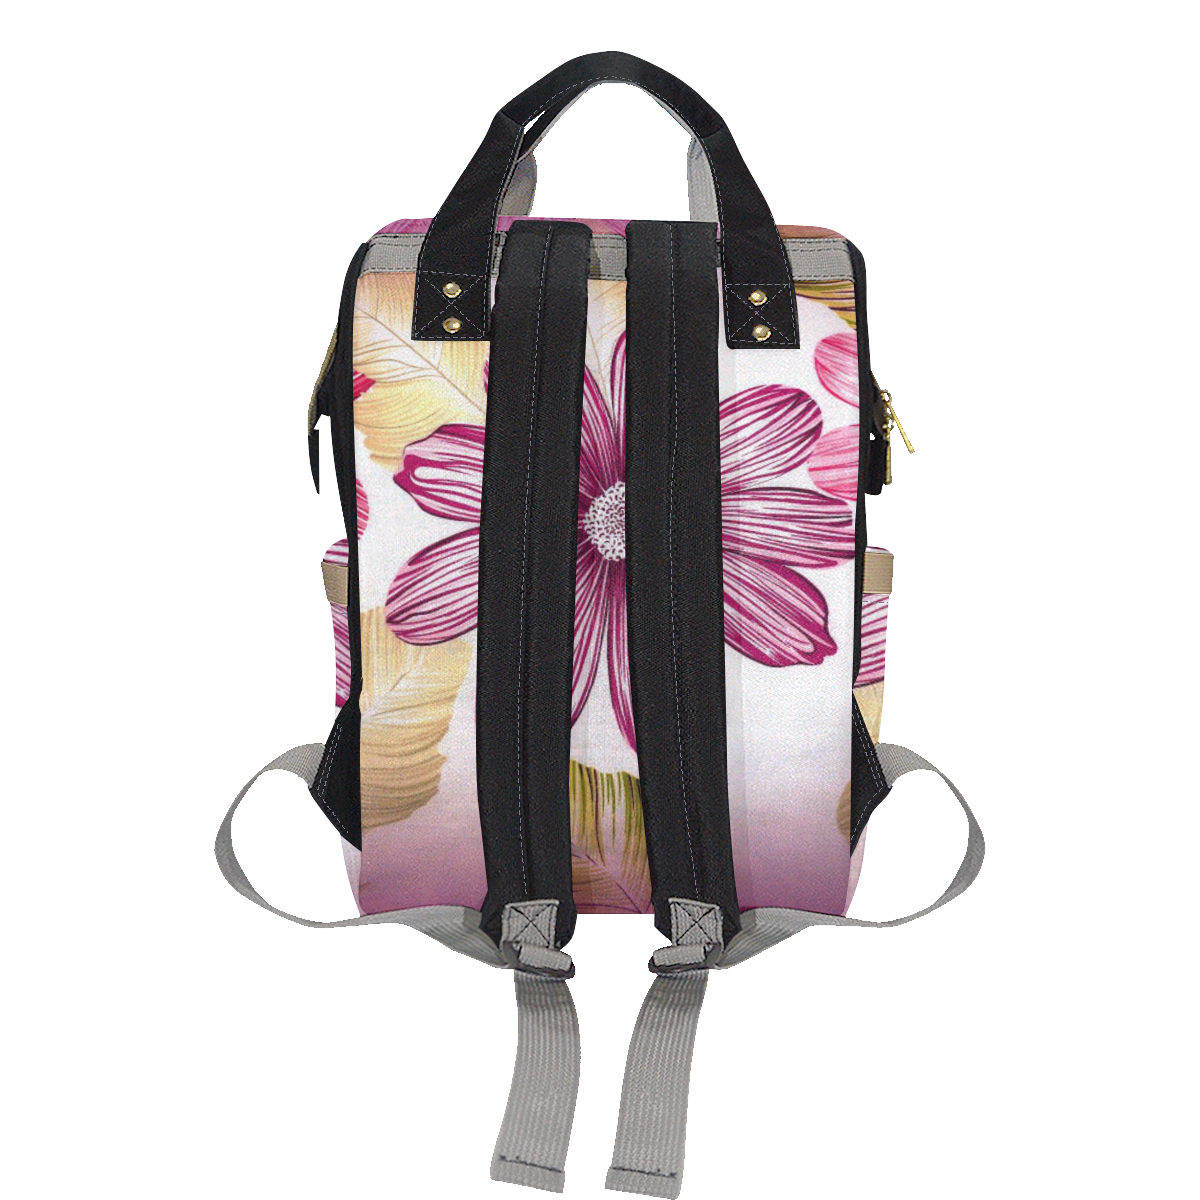 Garden Flowers Multi-Function Diaper Backpack/Diaper Bag (Model 1688)